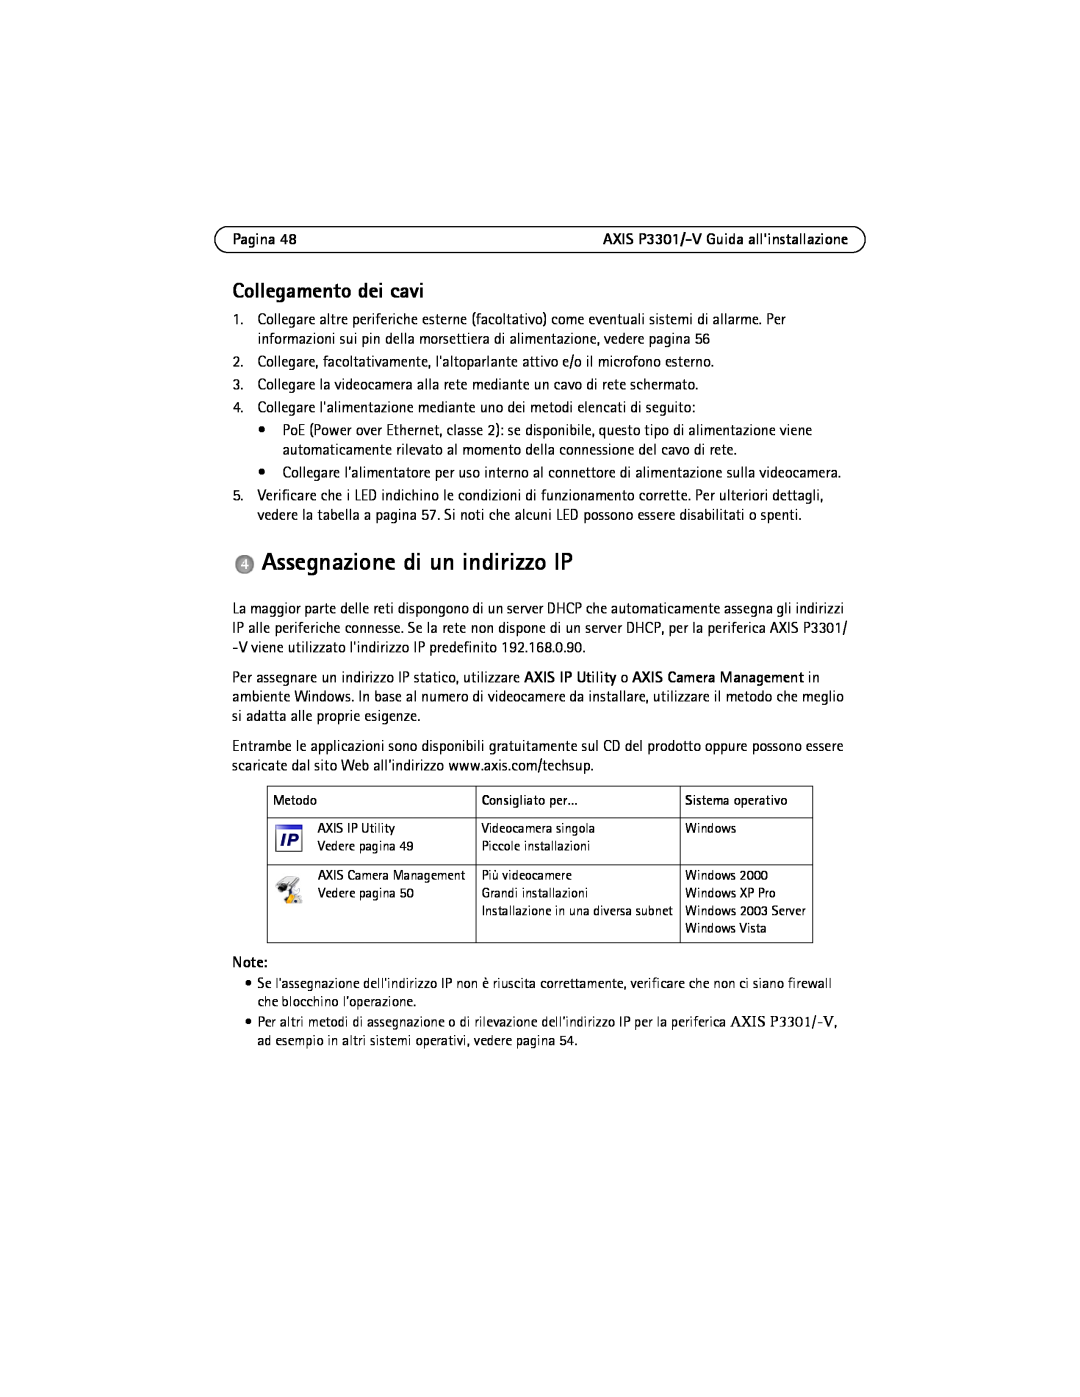 Axis Communications AXIS P3301-V manual Assegnazione di un indirizzo IP, Collegamento dei cavi, Pagina 